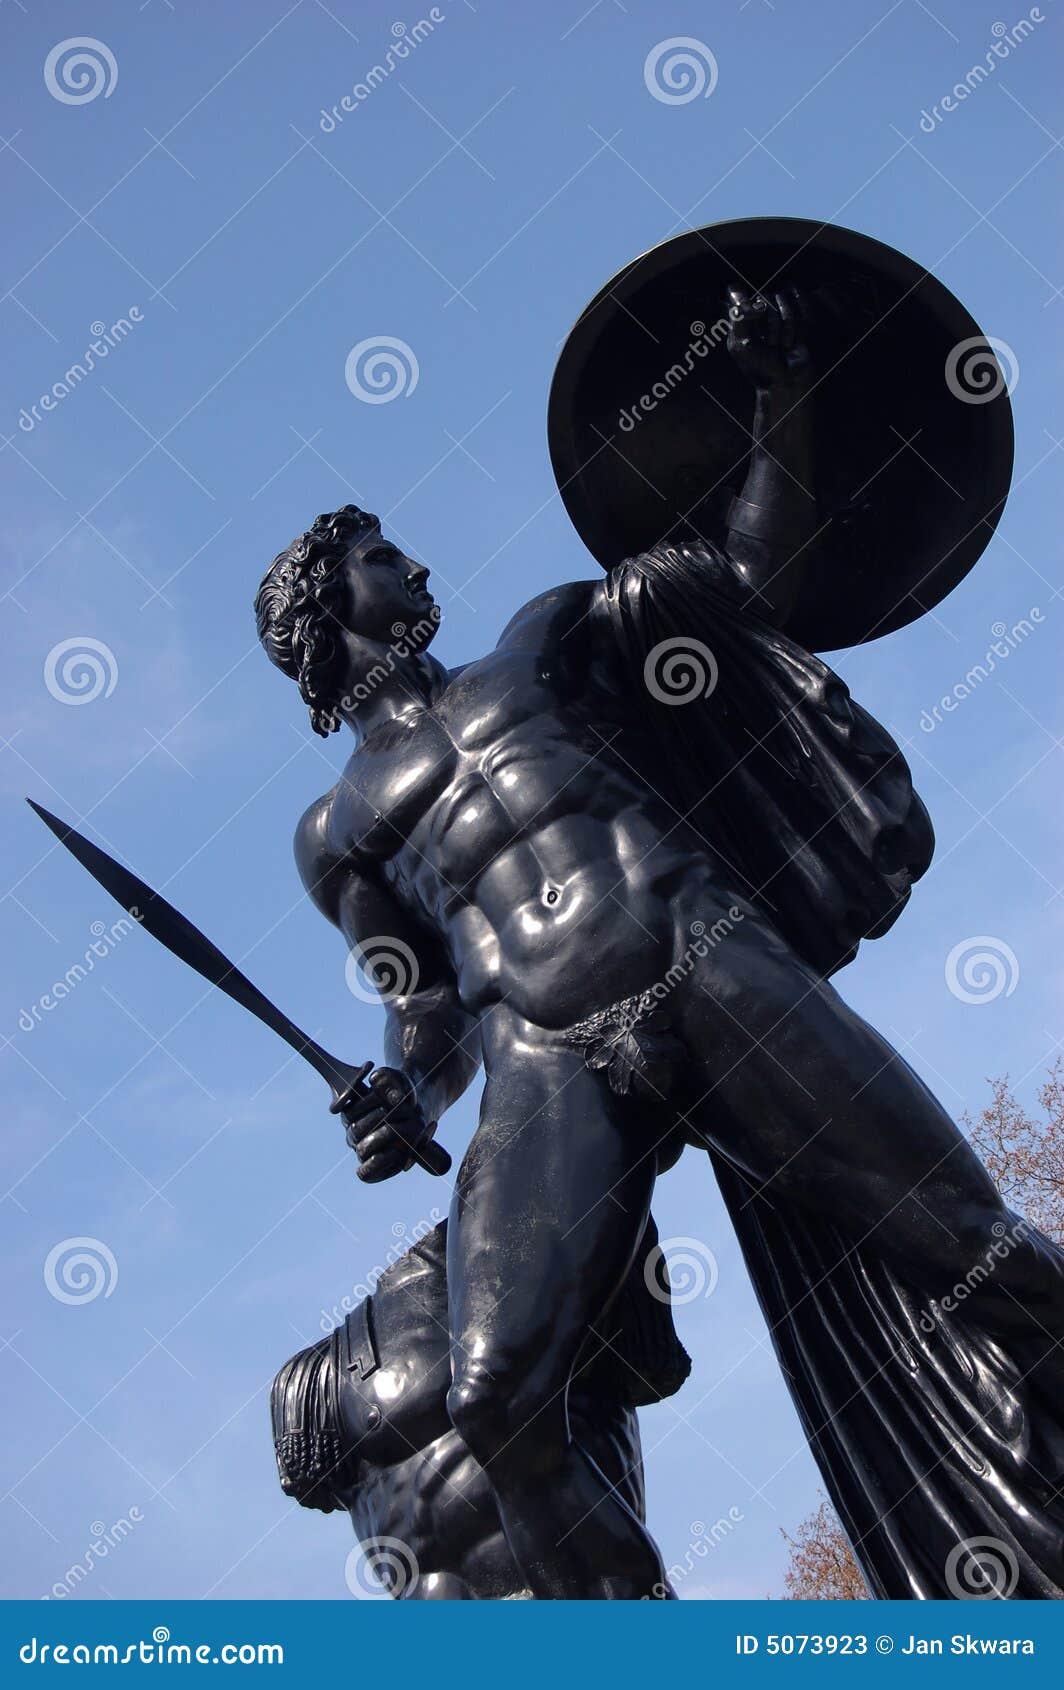 apollo statue in hyde park